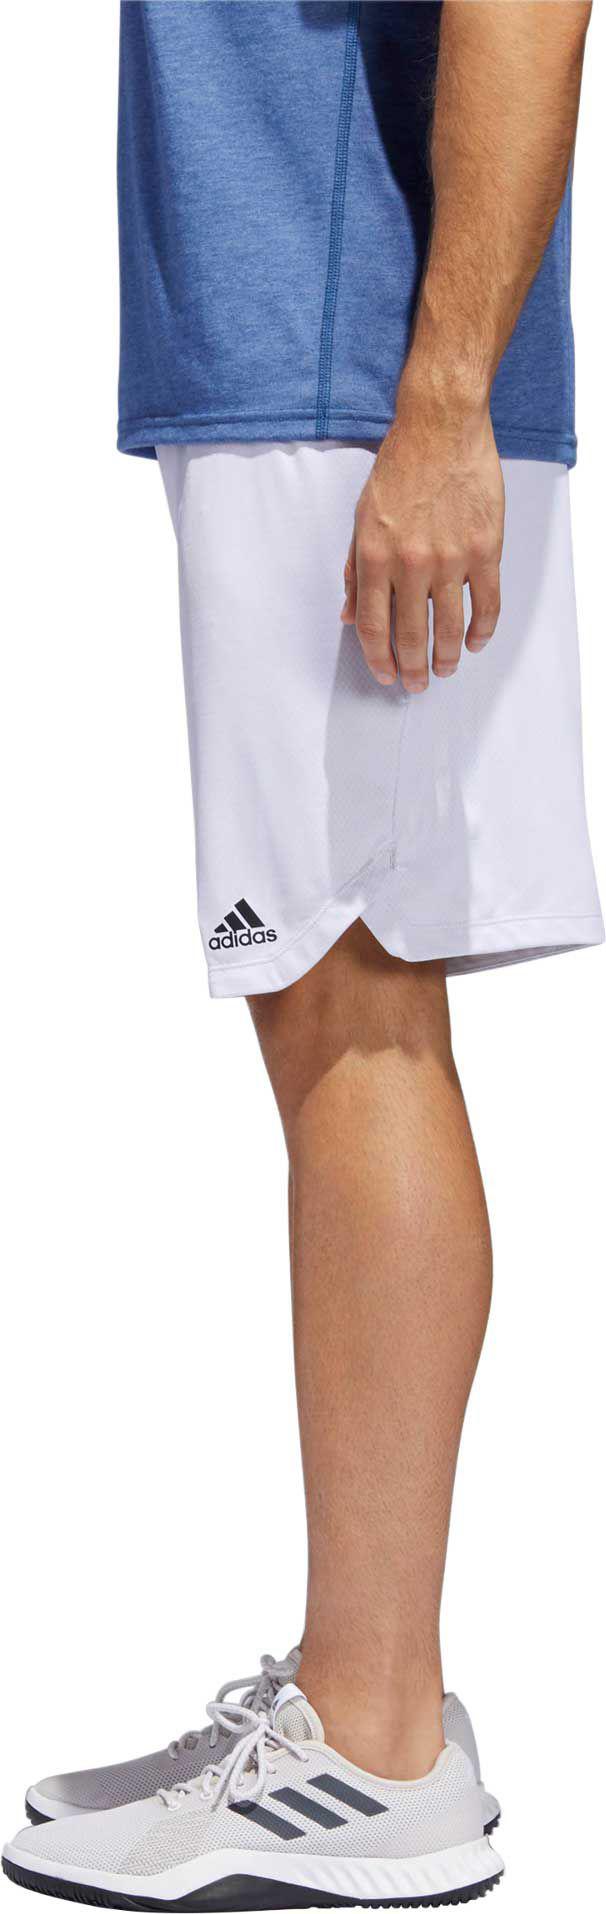 adidas axis knit shorts